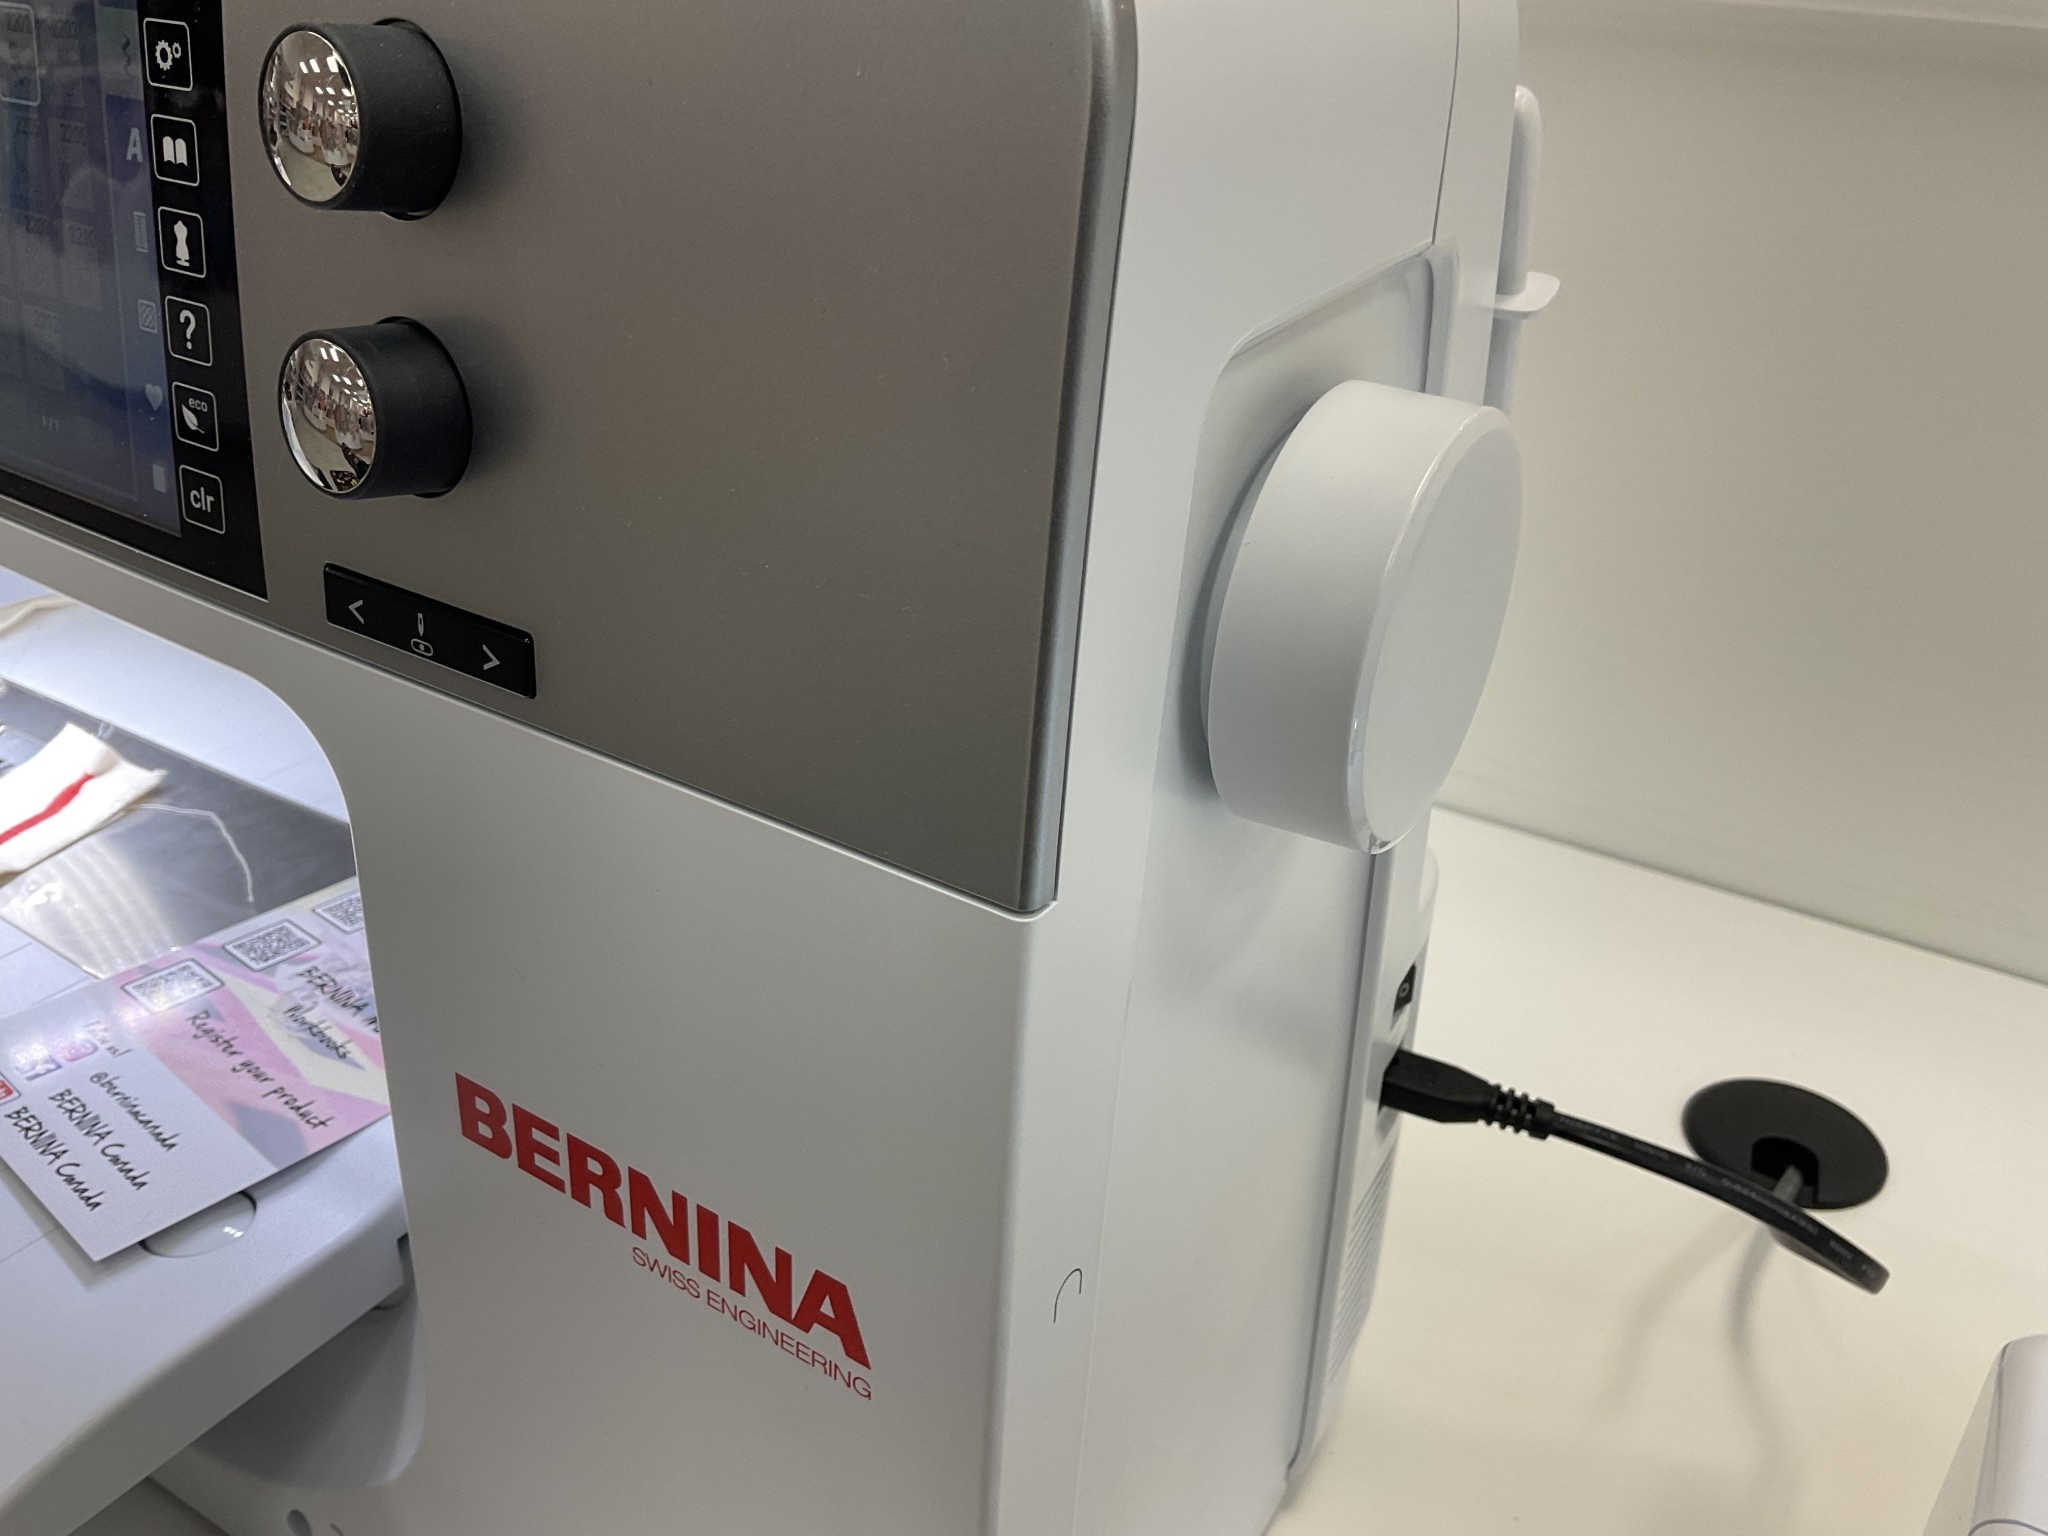 Bernina Hand wheel séries 3 to 7